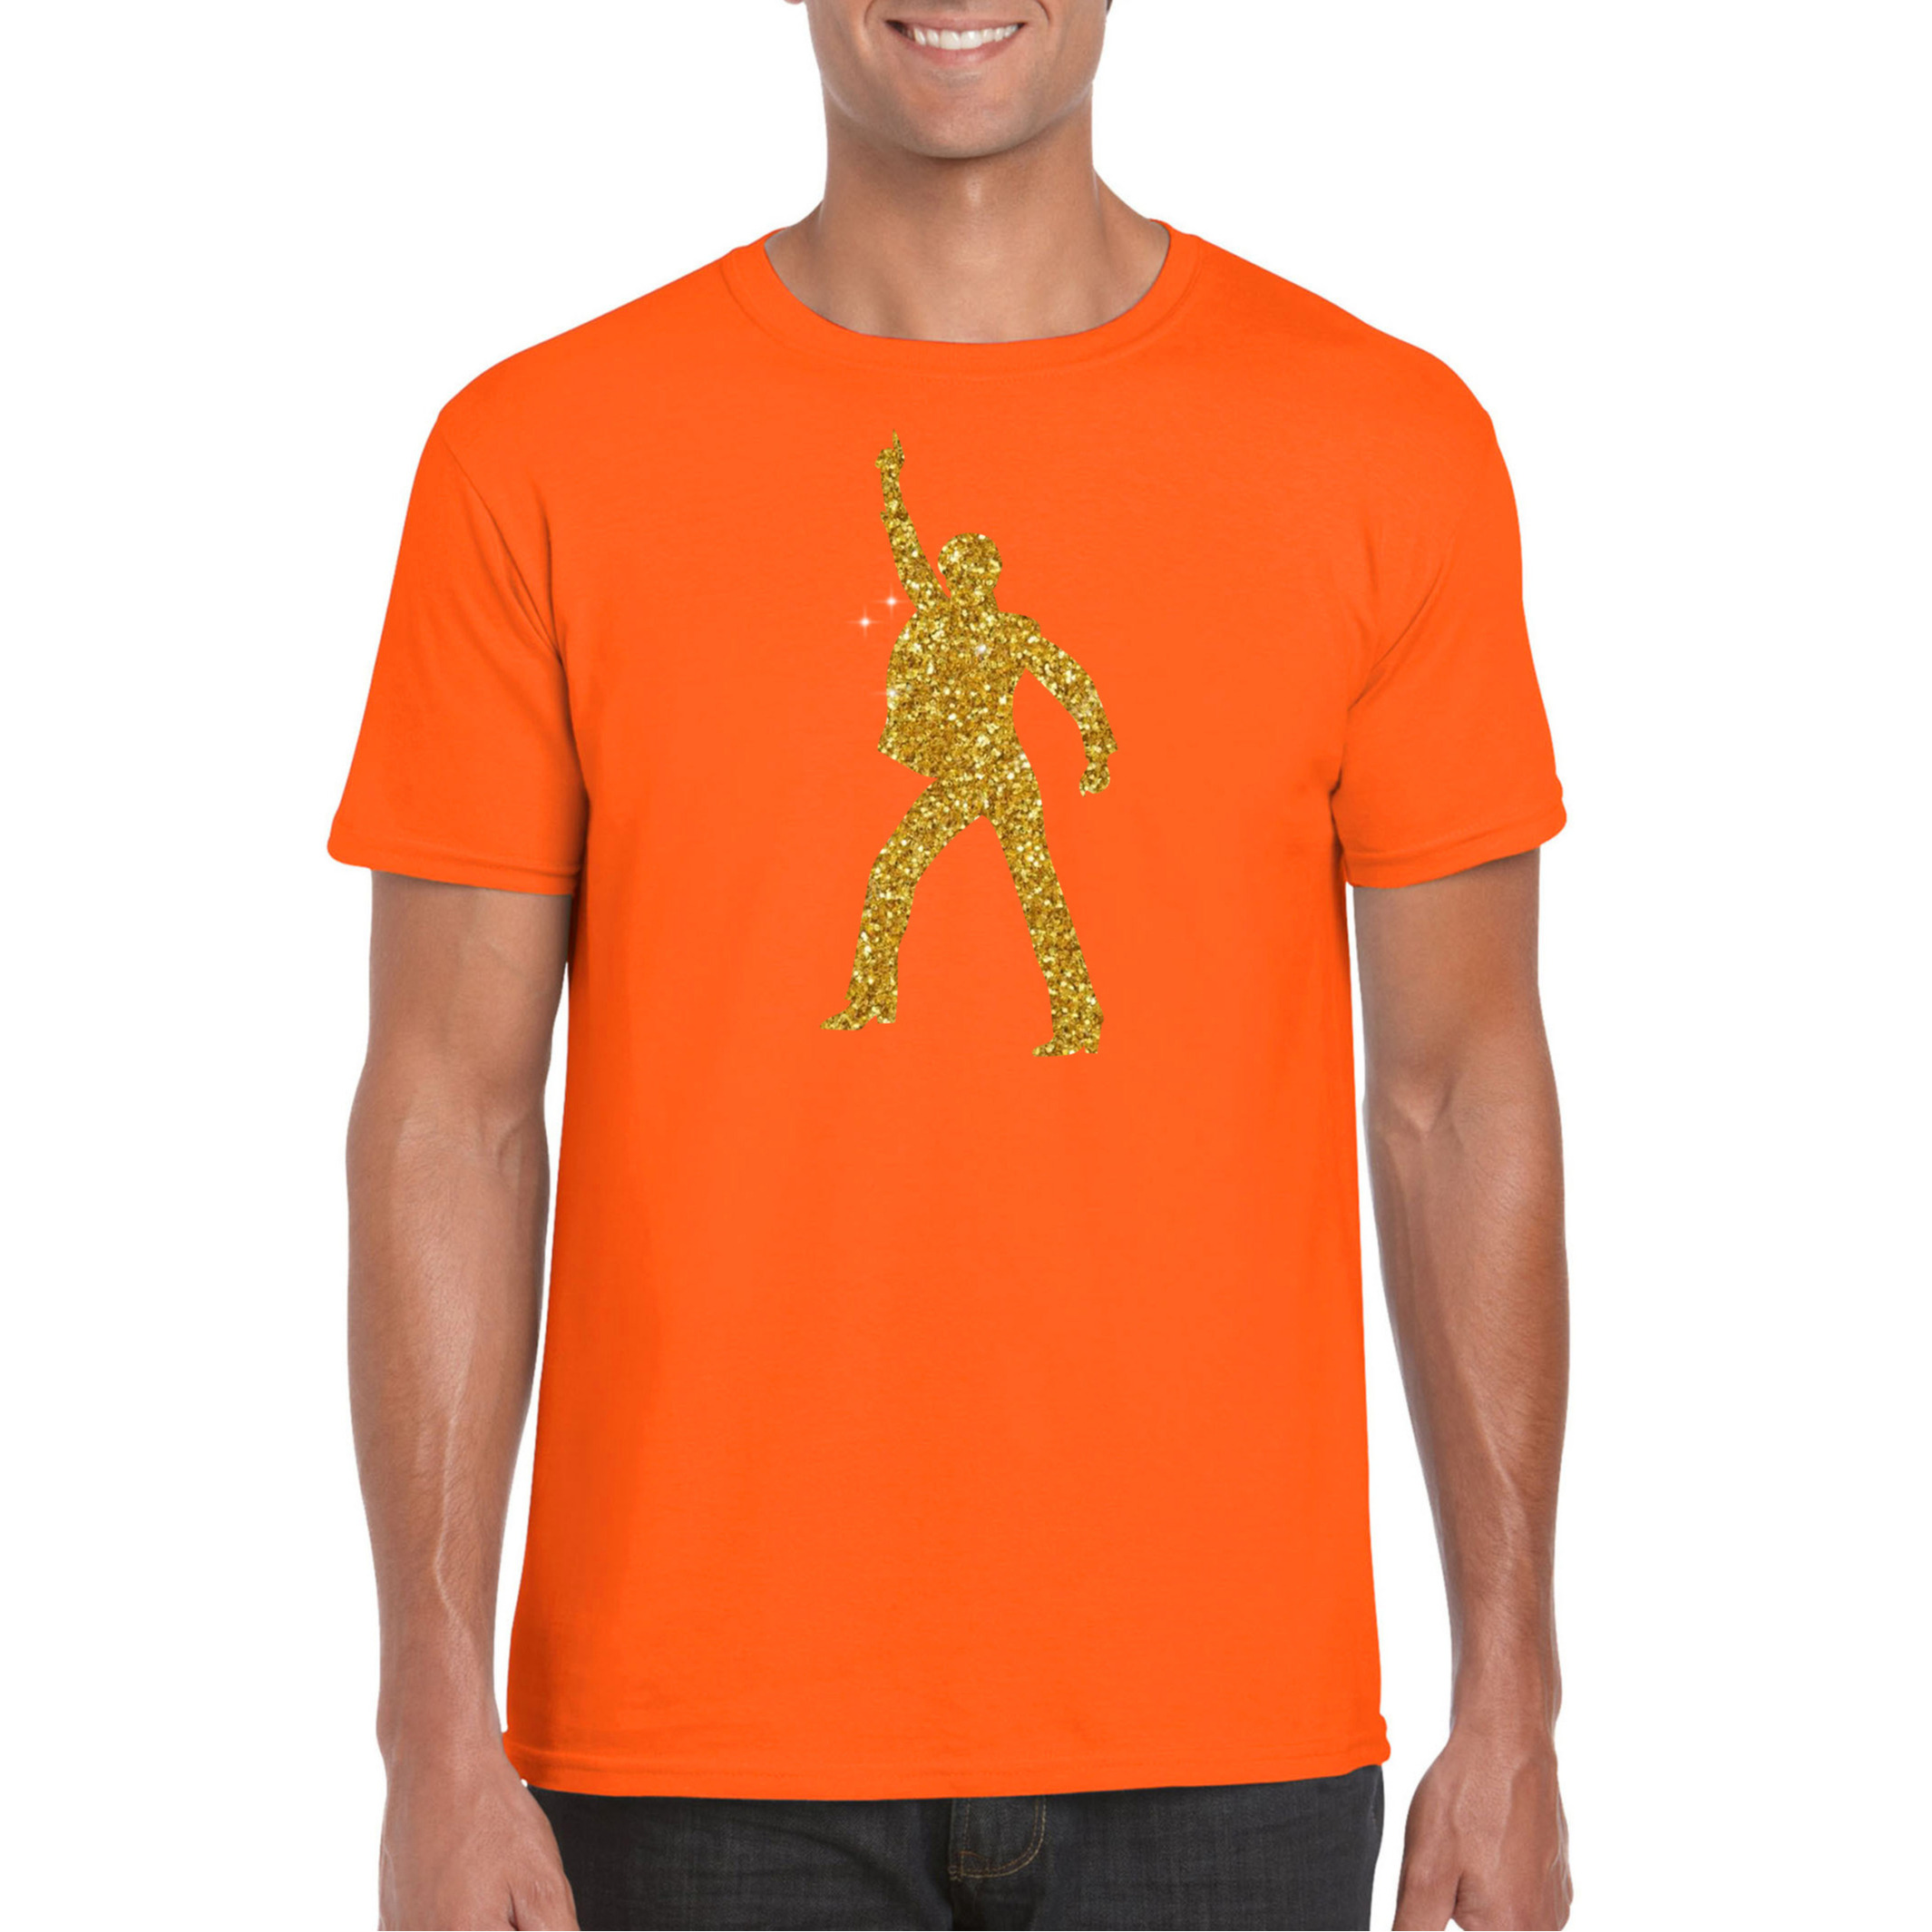 Disco verkleed t-shirt voor heren oranje gouden glitter jaren 70-80